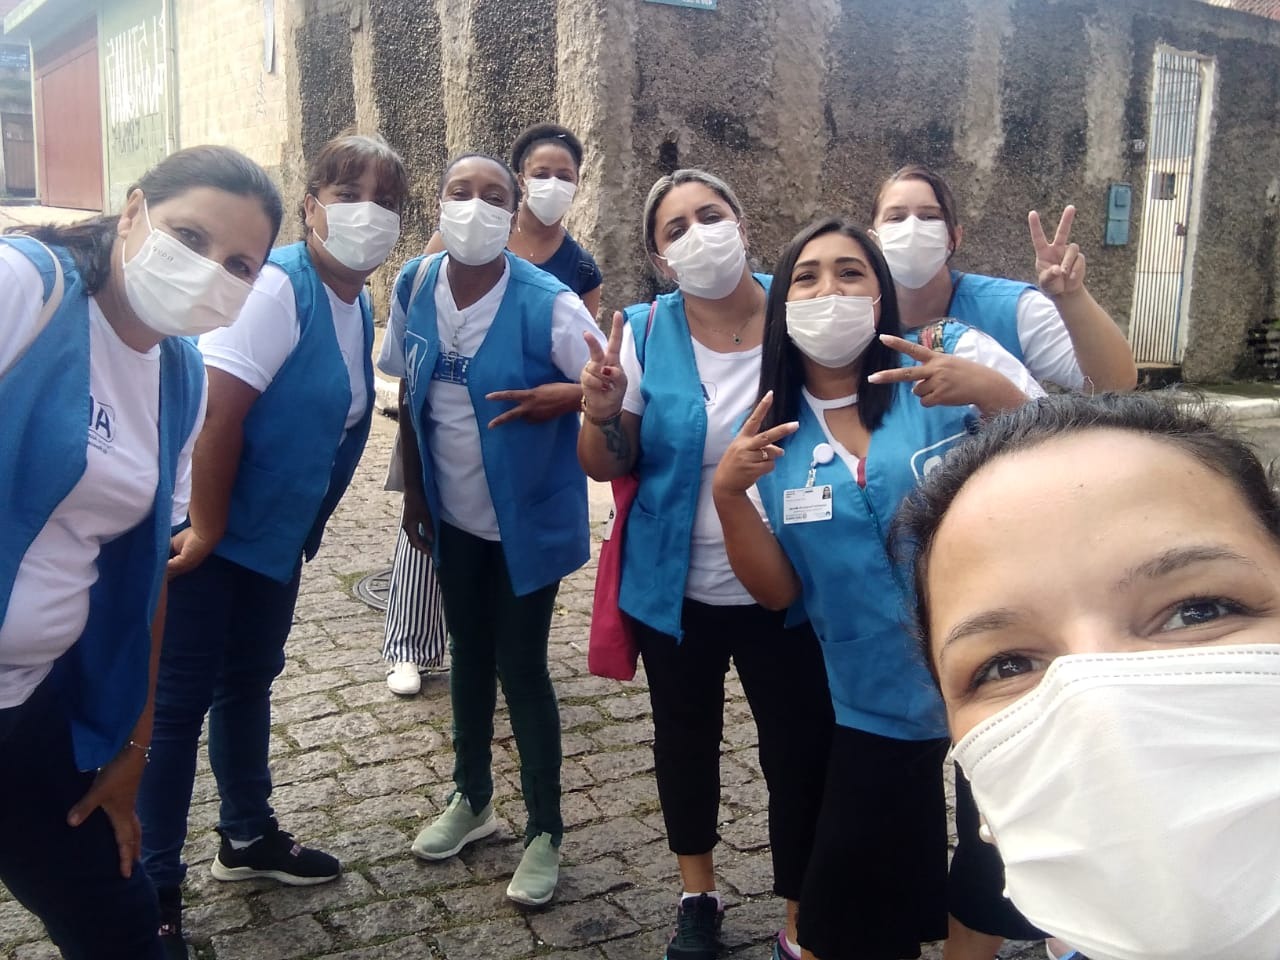 Na imagem, Cláudia está tirando uma selfie com mais sete amigas de profissão. Todas elas usam roupas brancas, colete azul e máscara branca.